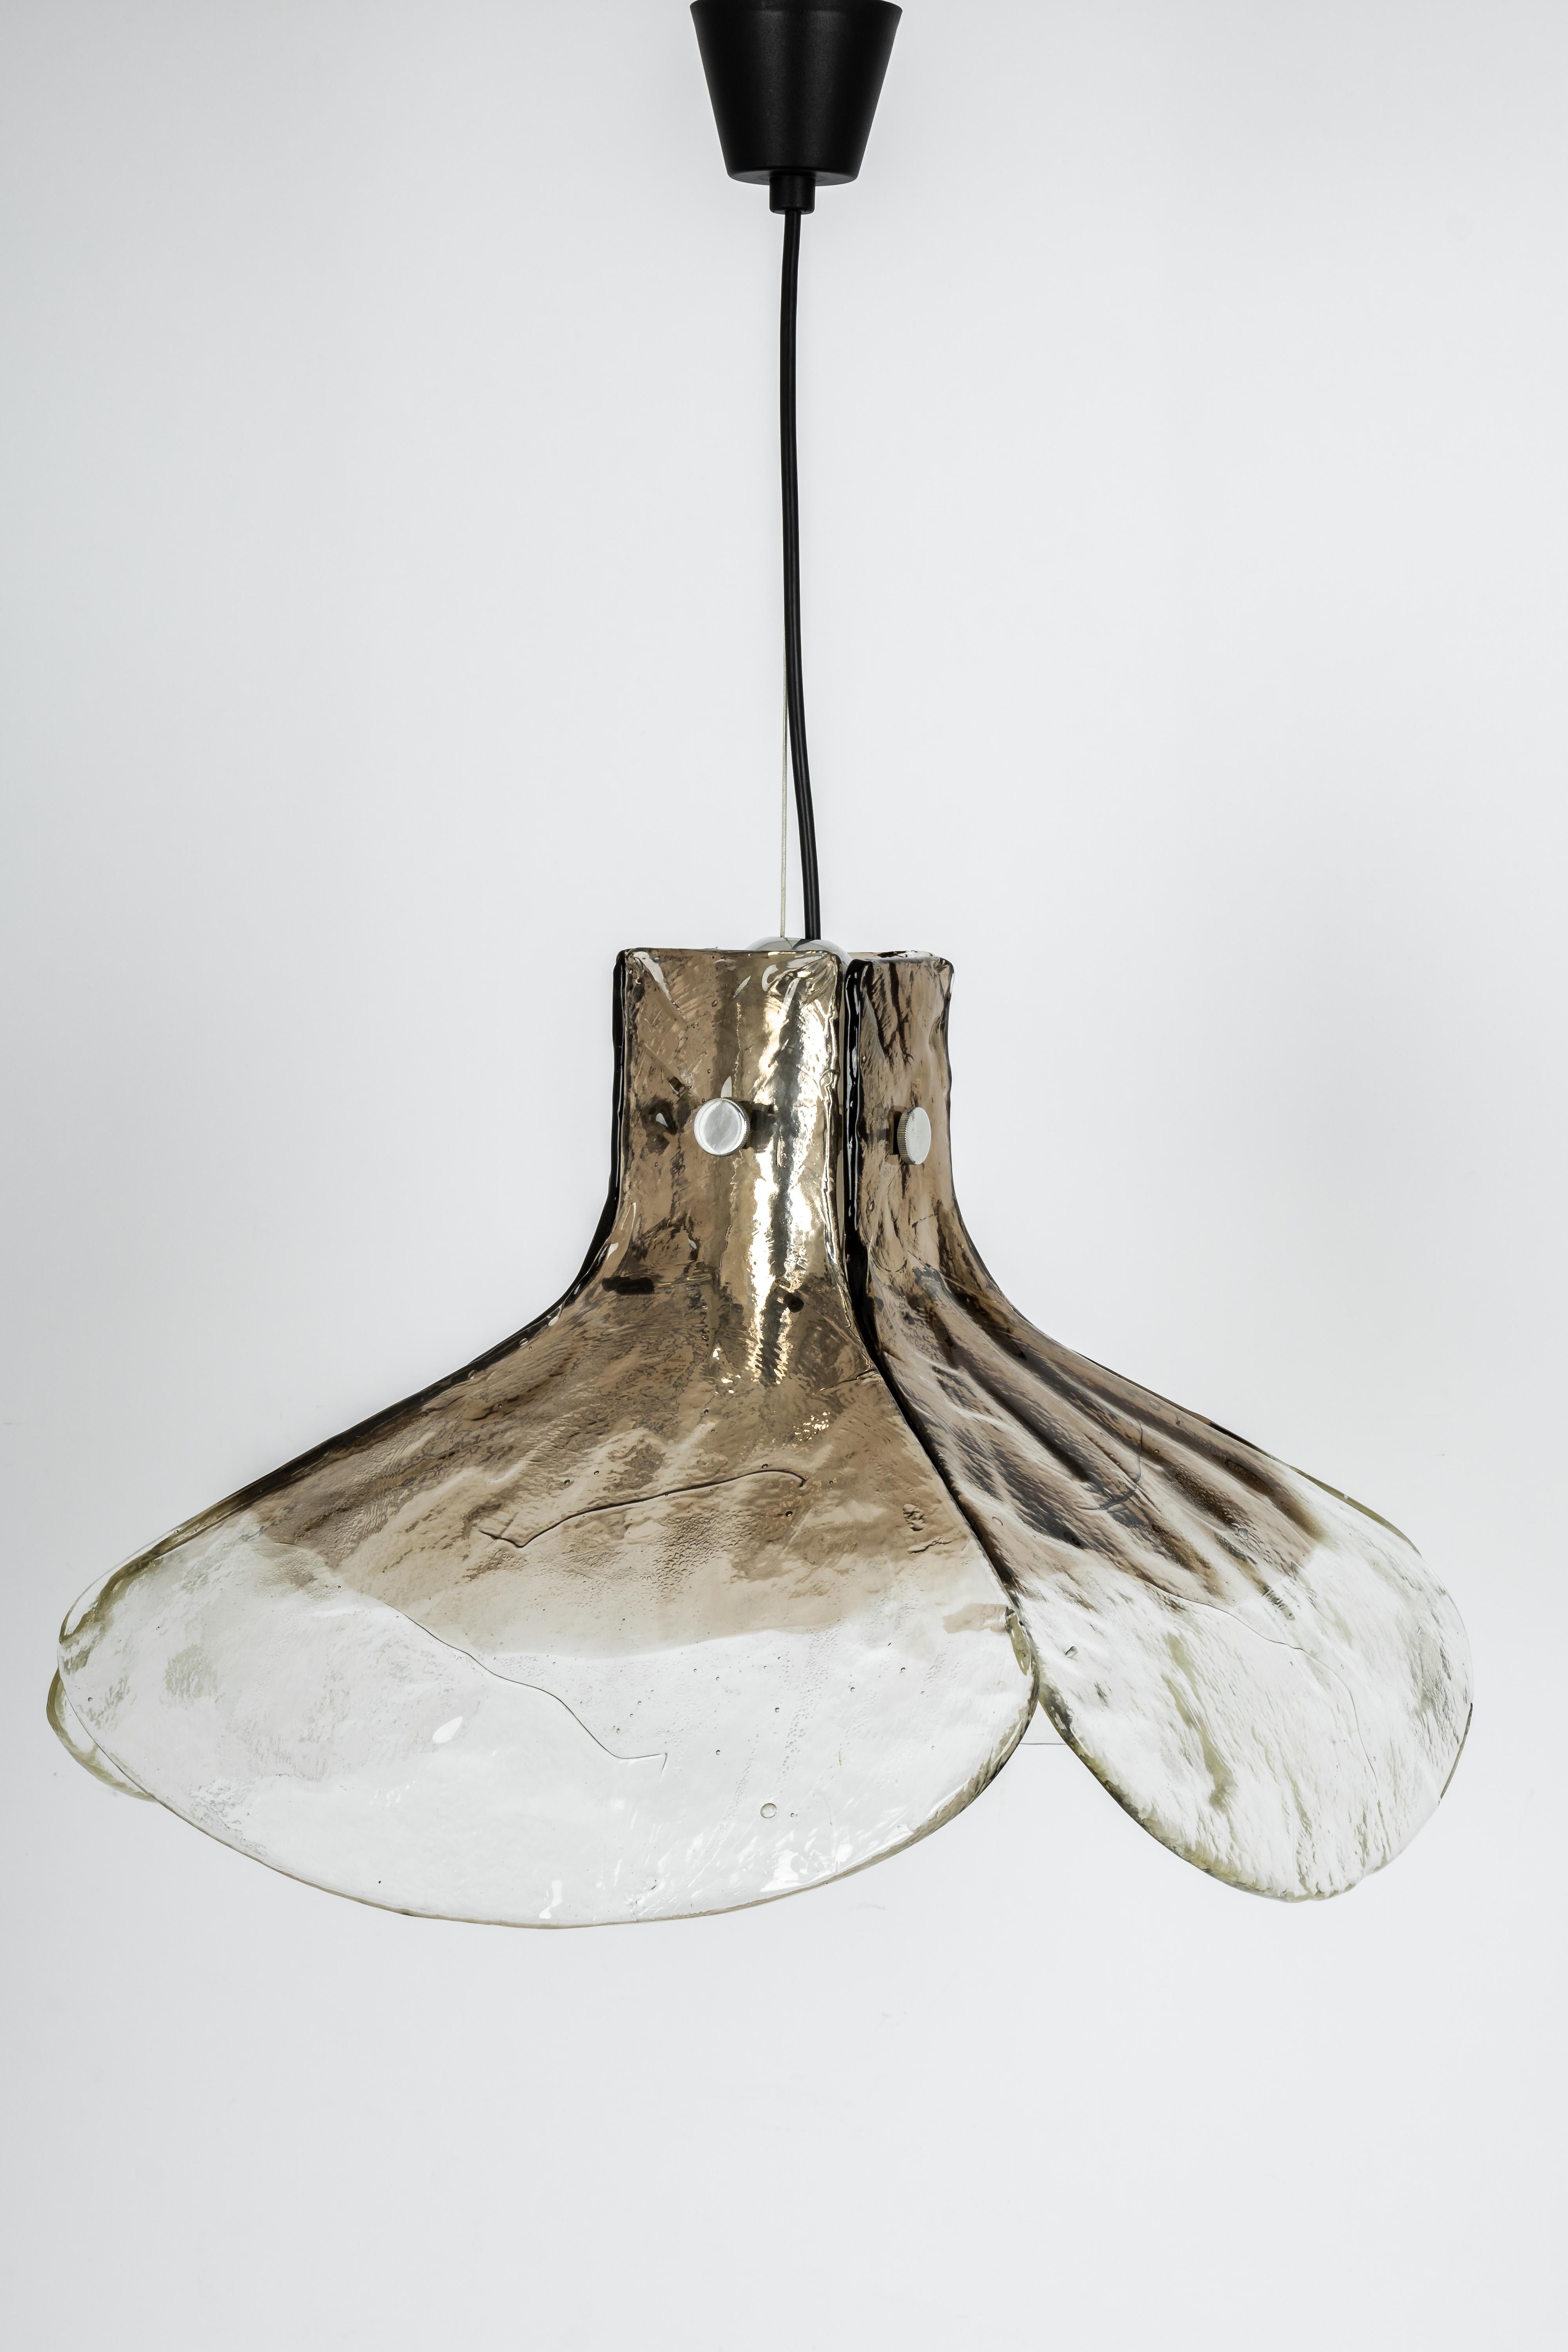 Ein atemberaubender großer Murano-Kronleuchter aus Rauchglas, entworfen von Kalmar, Österreich, hergestellt in den 1960er Jahren.
Der Kronleuchter besteht aus 4 dicken Muranoglaselementen, die an einem Metallrahmen befestigt sind.

Hochwertig und